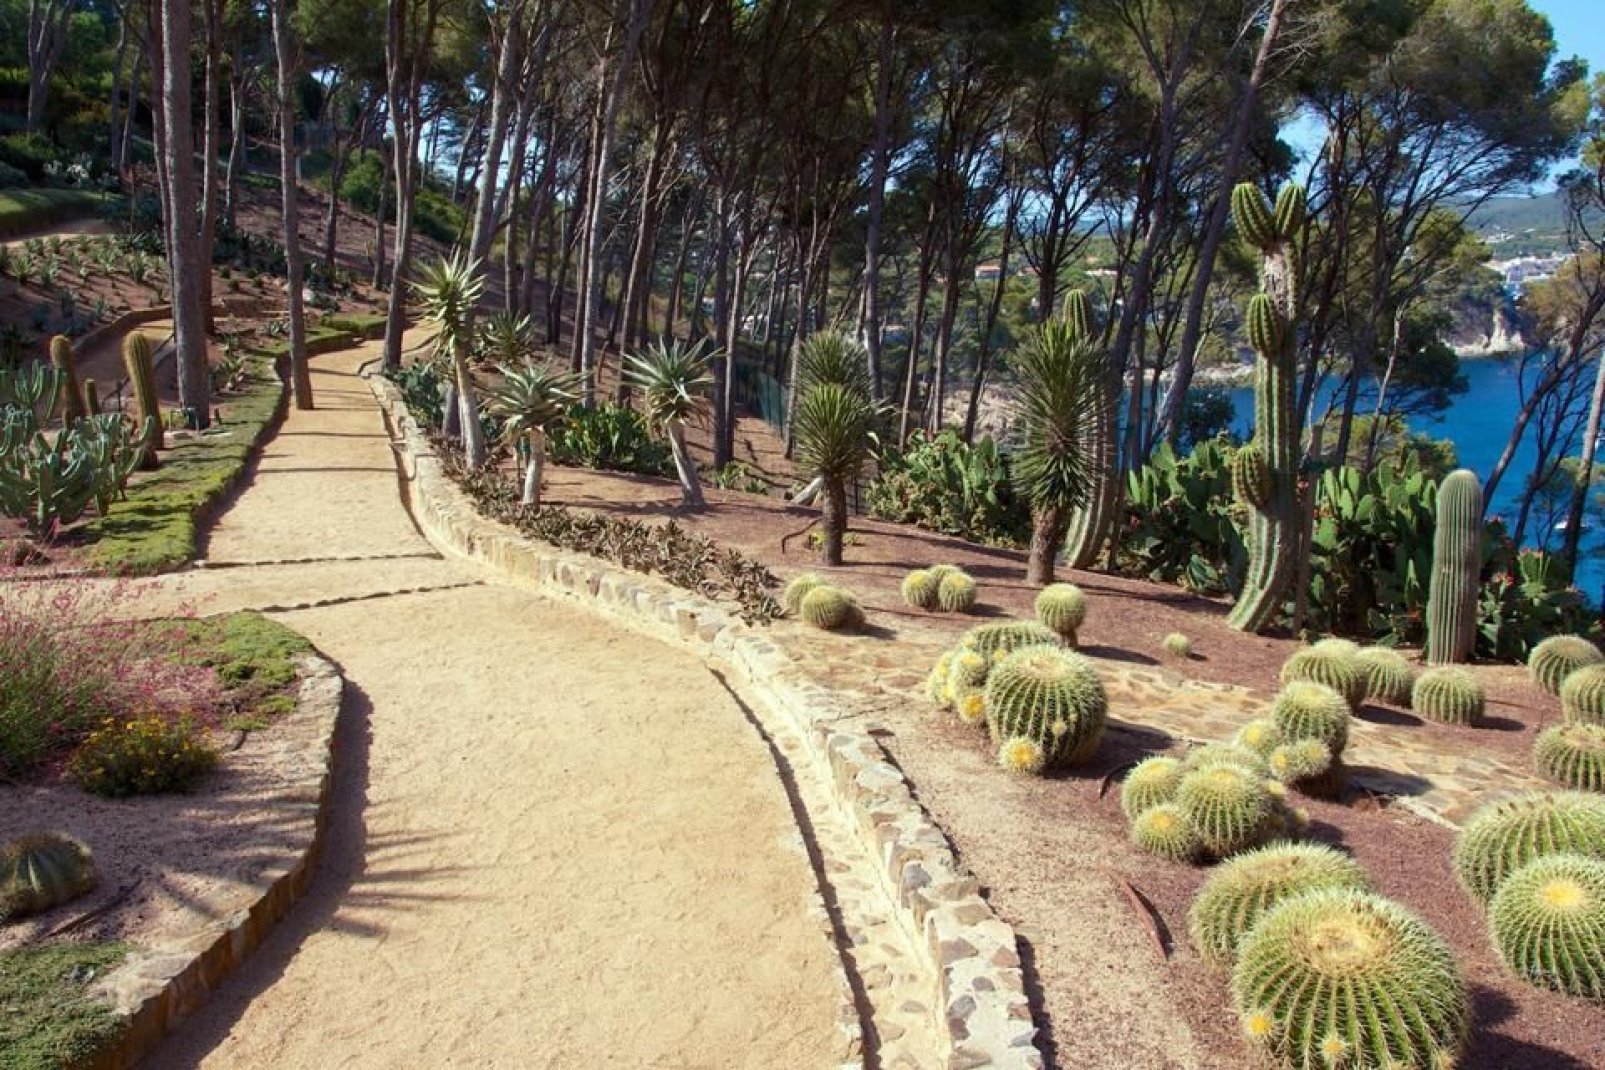 Der Botanische Garten von Lloret de Mar umfasst einen schönen Abschnitt am Meeresufer, der Kaktusgewächsen gewidmet ist.